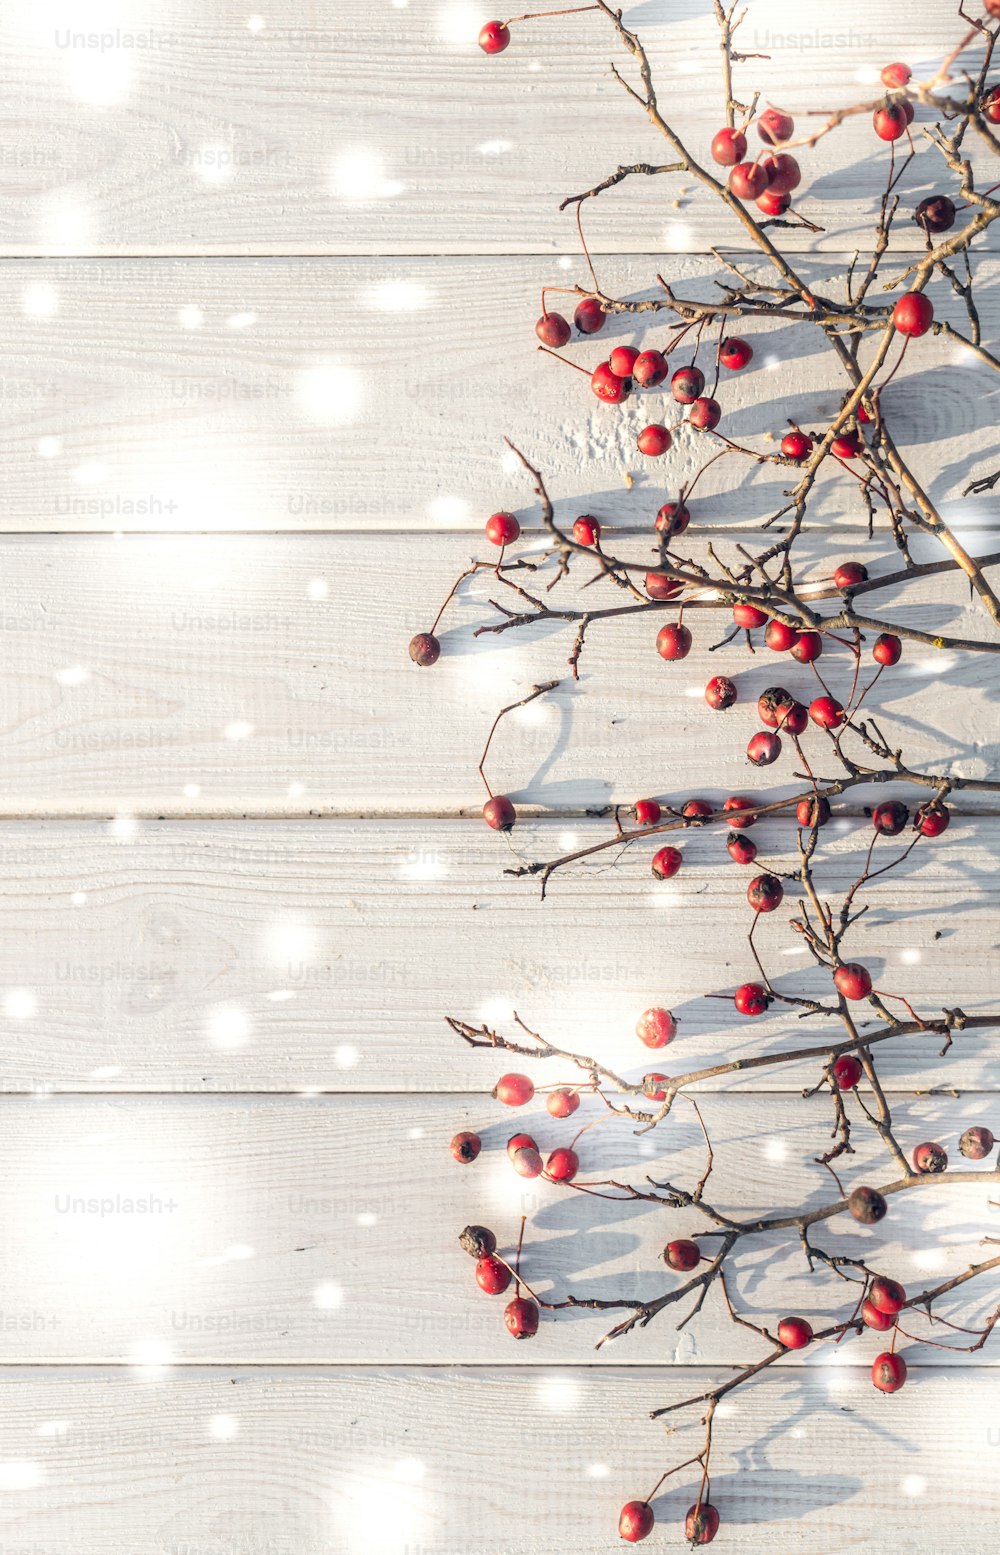 Winterfestlicher Hintergrund. Die leuchtend roten Beeren reifer Weißdornbeeren auf einem Hintergrund aus eleganten weißen Brettern. Dekorativer Hintergrund für Weihnachts- und Neujahrsgrußkarten